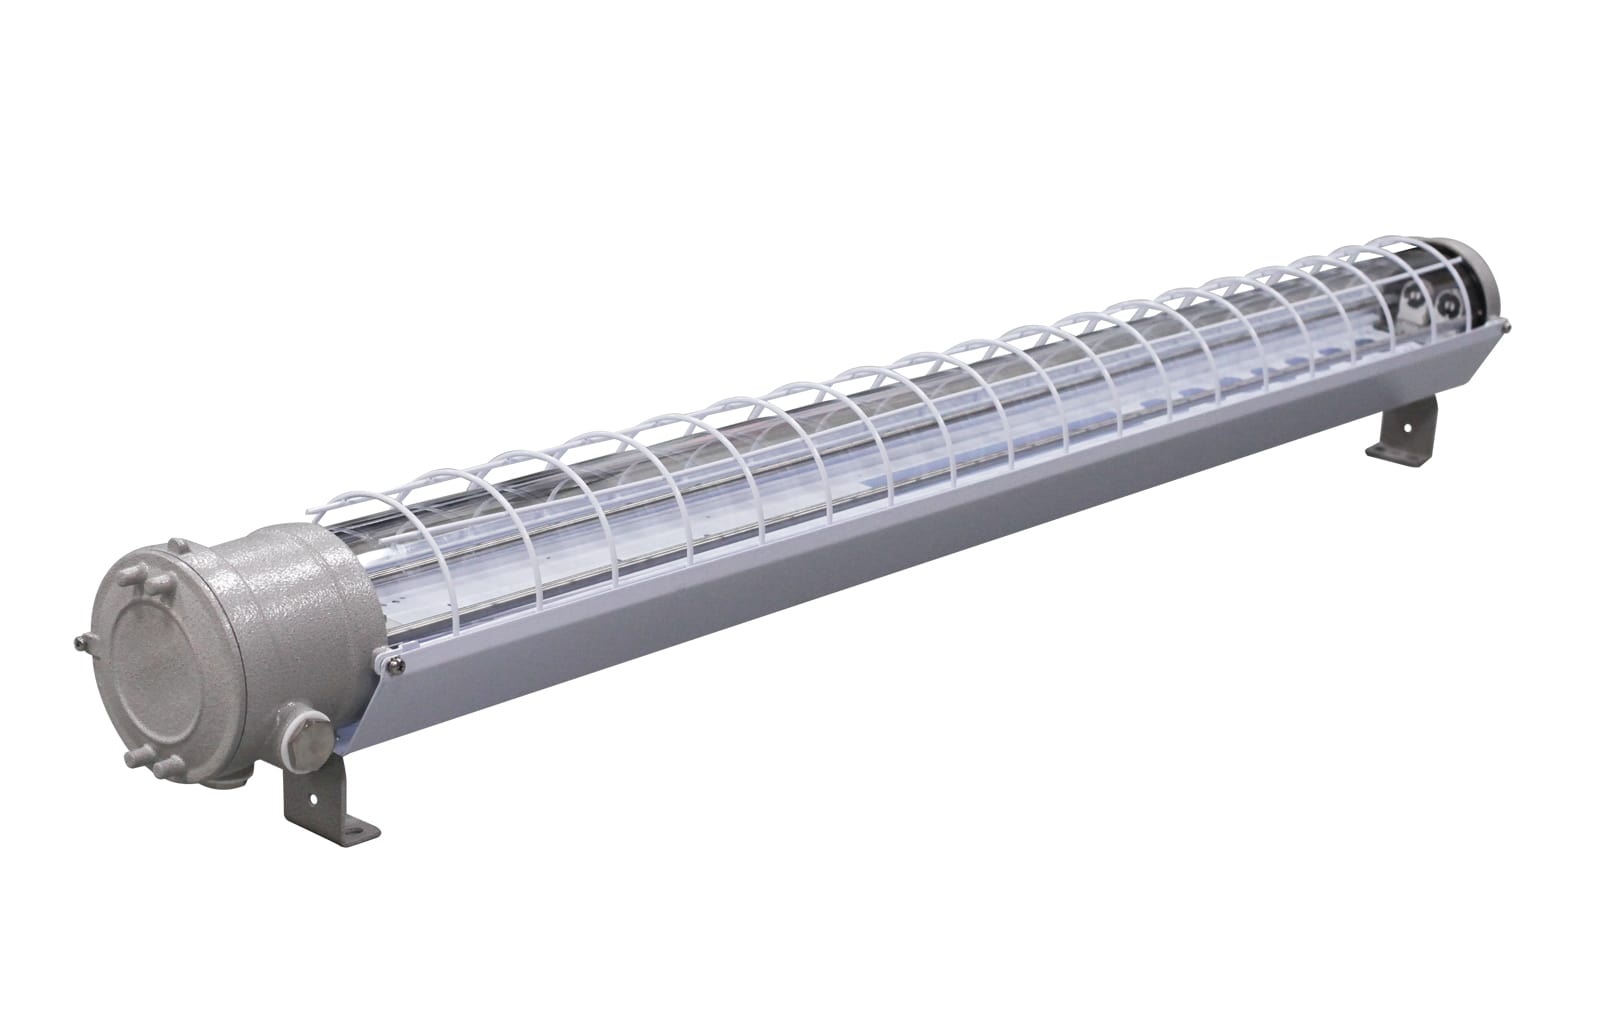 Светильники рудничные для люминесцентных ламп серии СГЛ03-М…Л в корпусе из малоуглеродистой стали